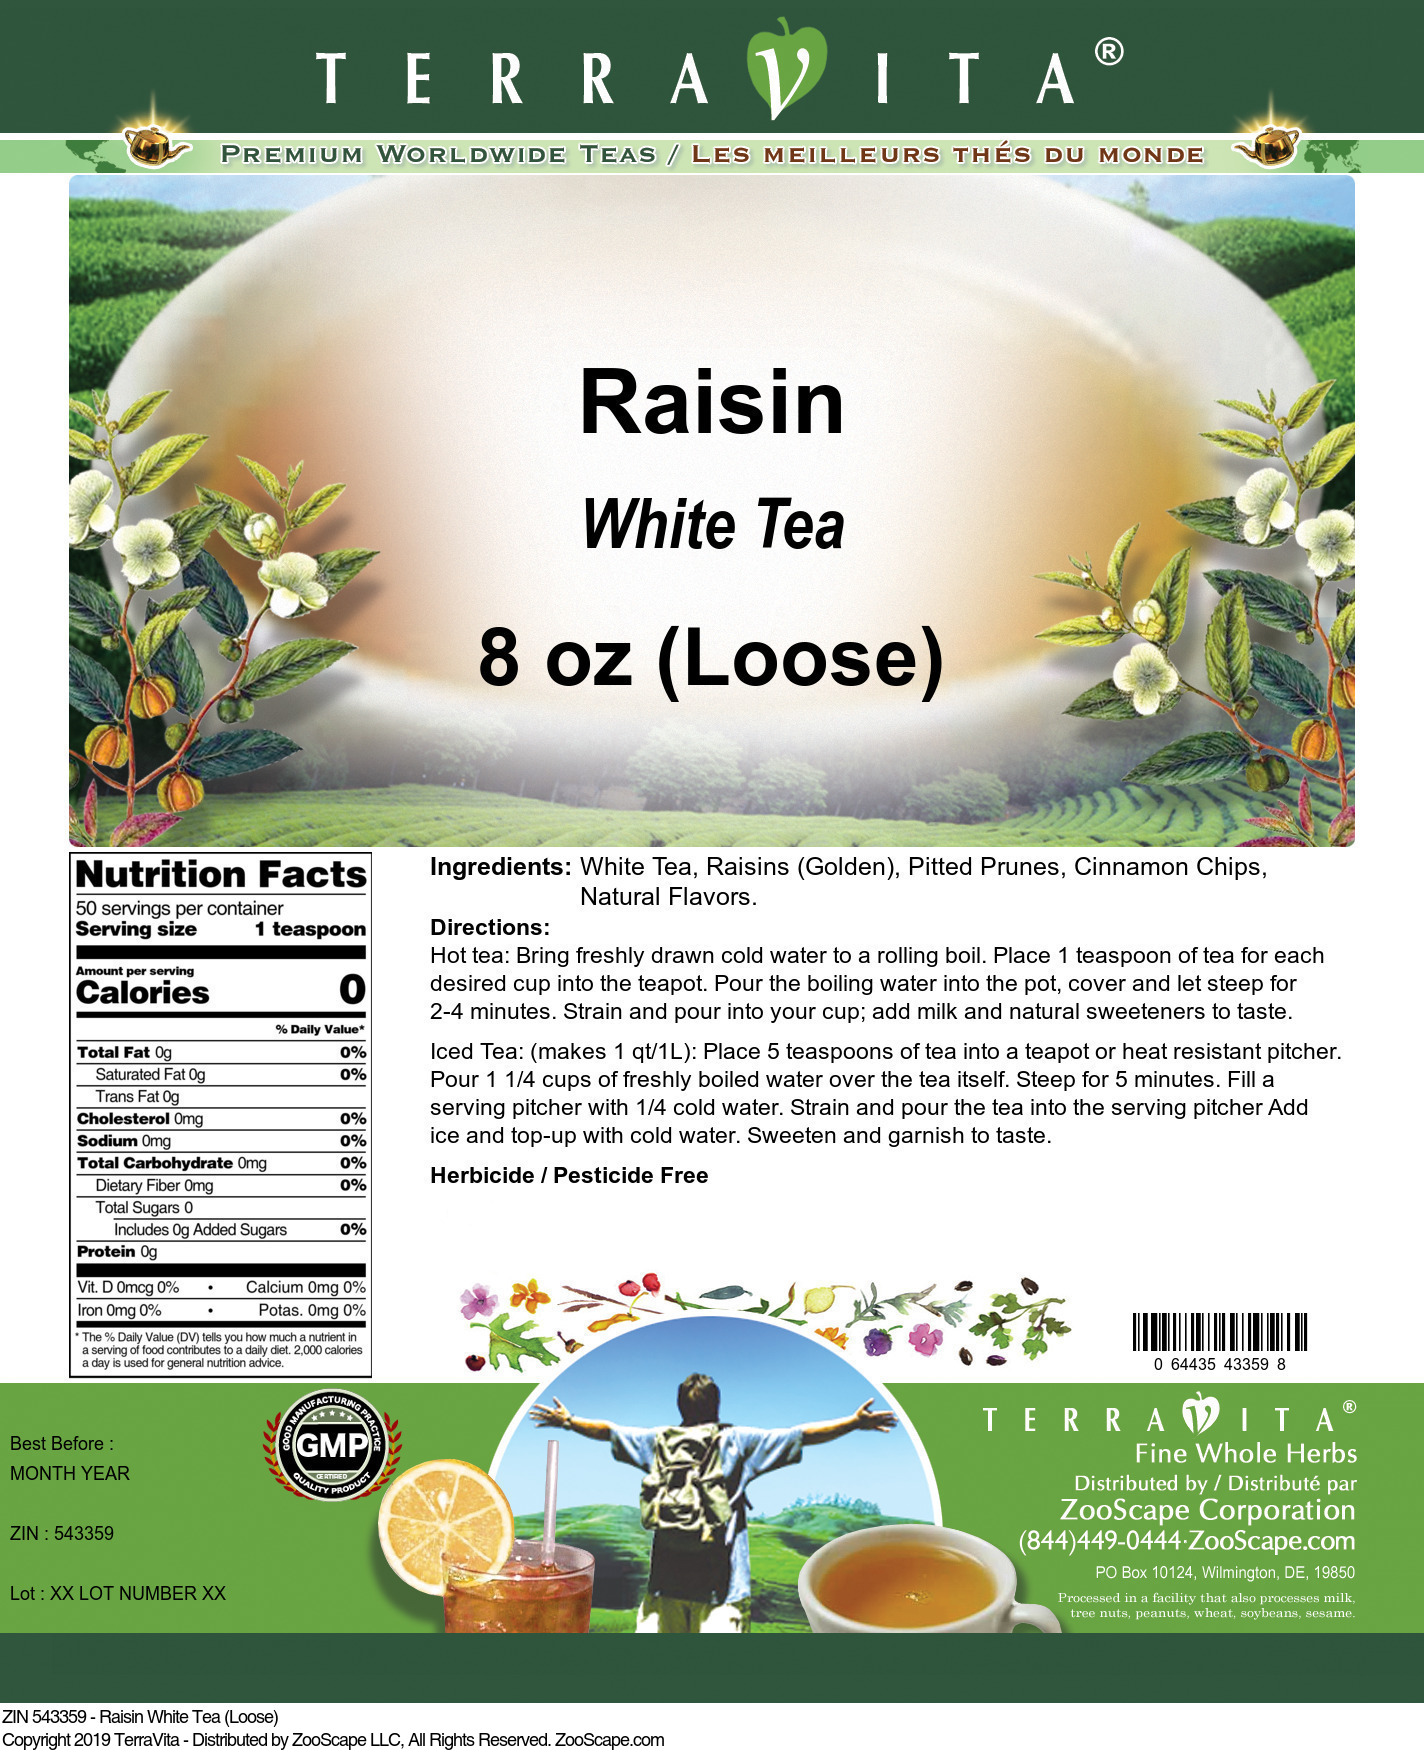 Raisin White Tea (Loose) - Label